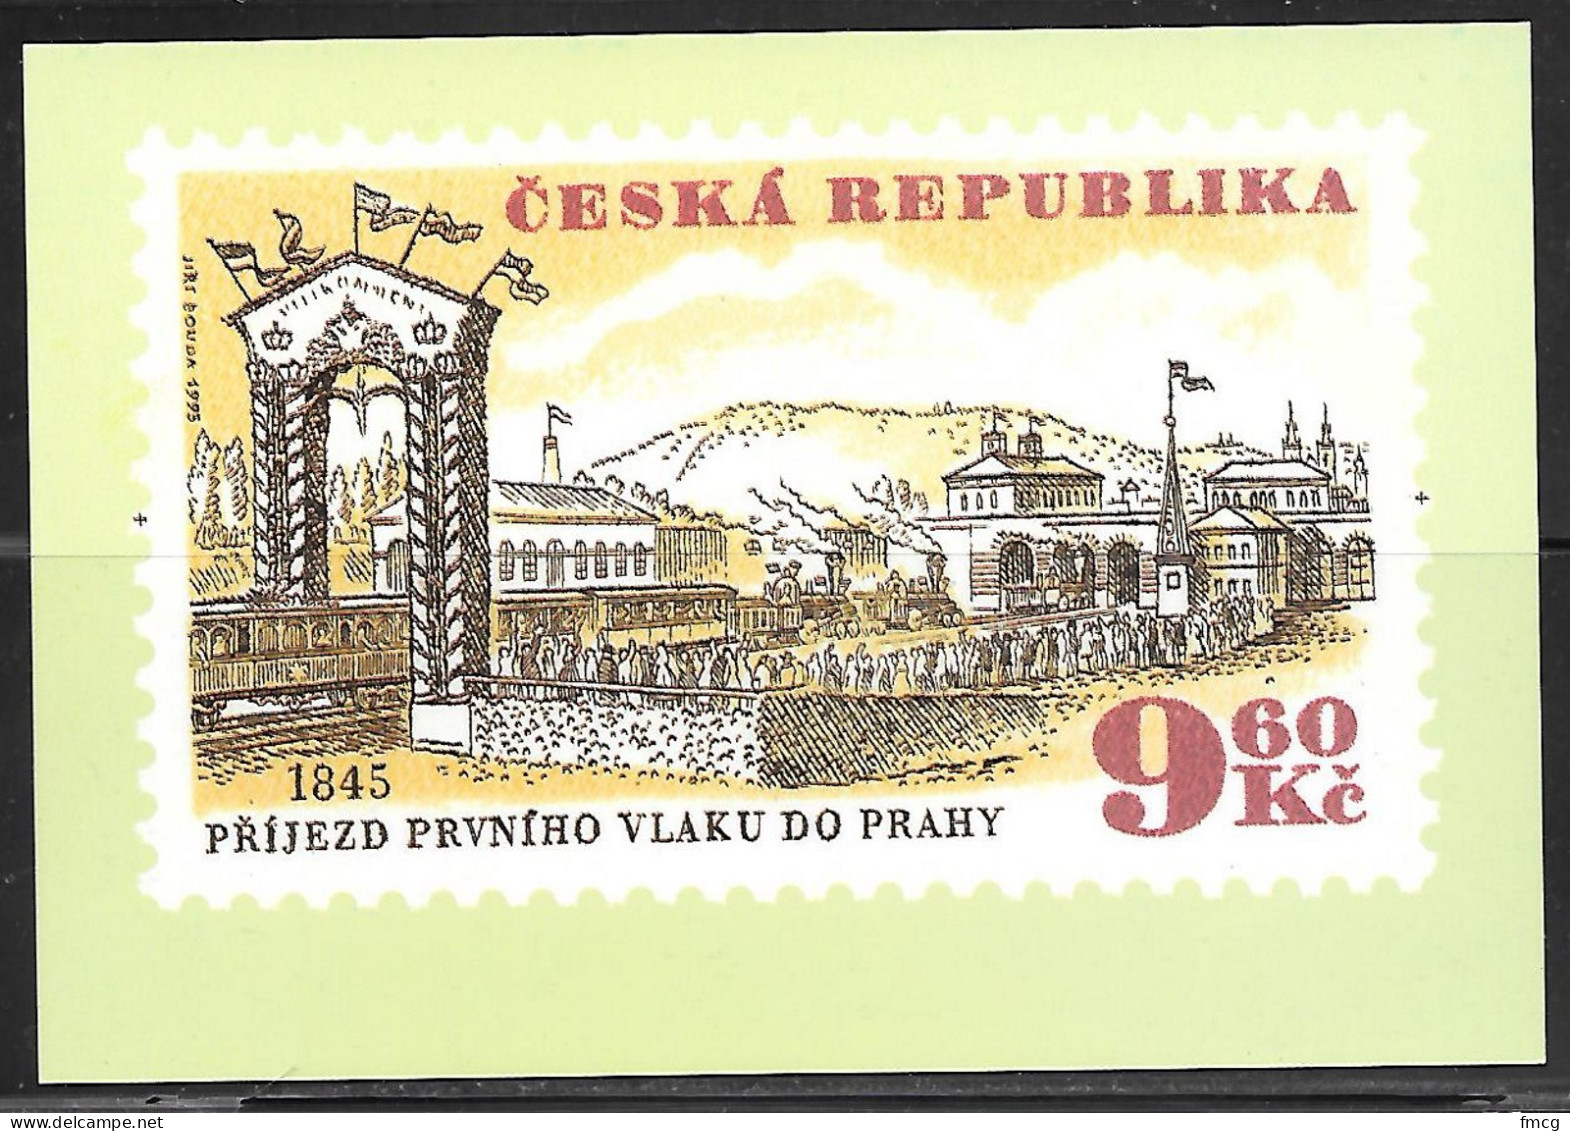 Czech Republic, 1995, Railroad Stamp, 9.60kc, Unused    - Tchéquie